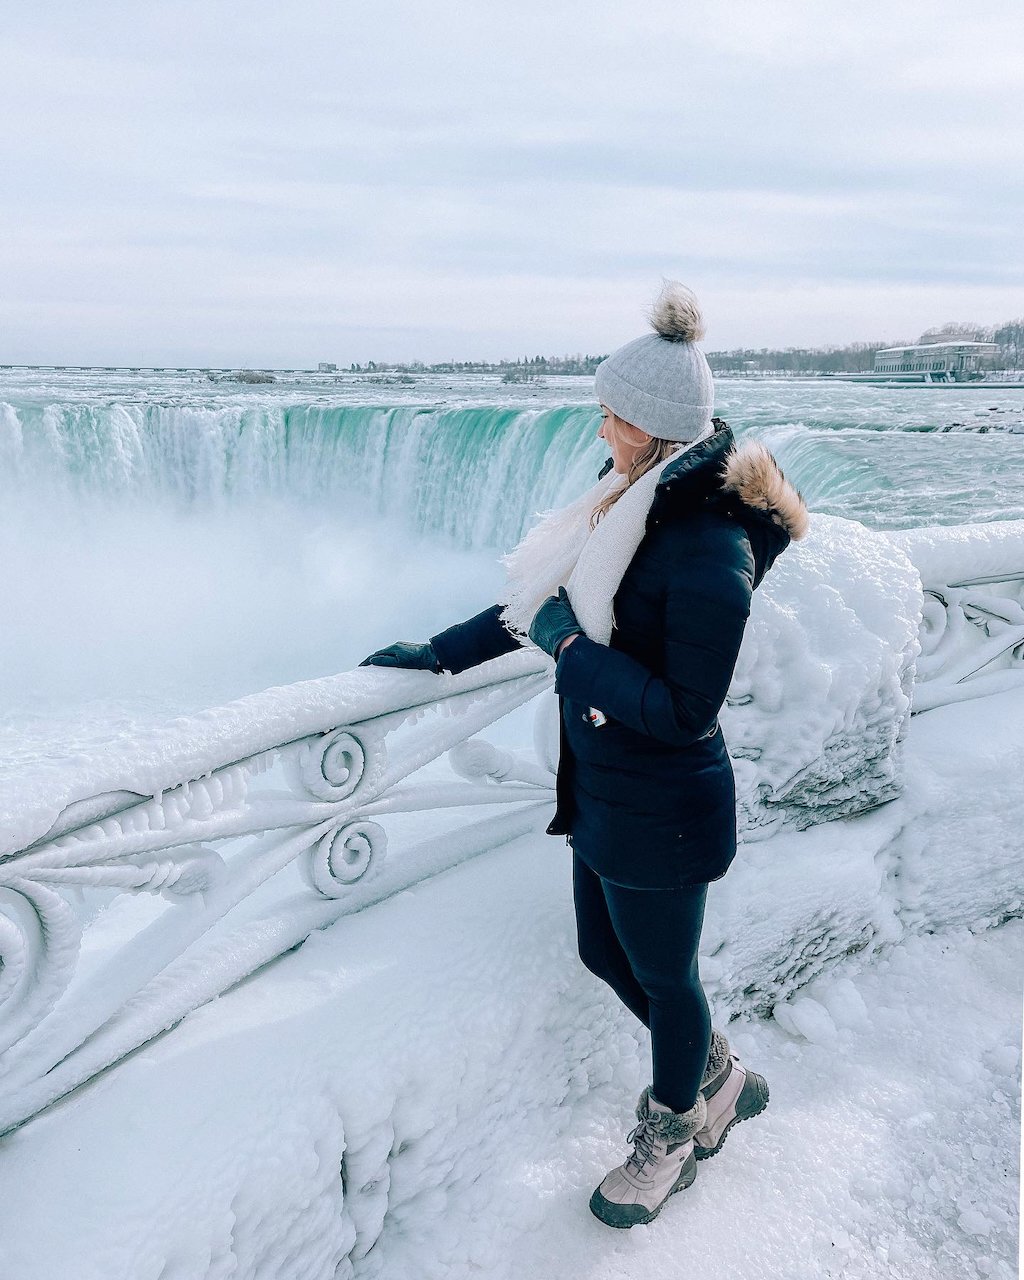 Winter Season at Niagara Falls - Frozen Falls - Ontario - Canada